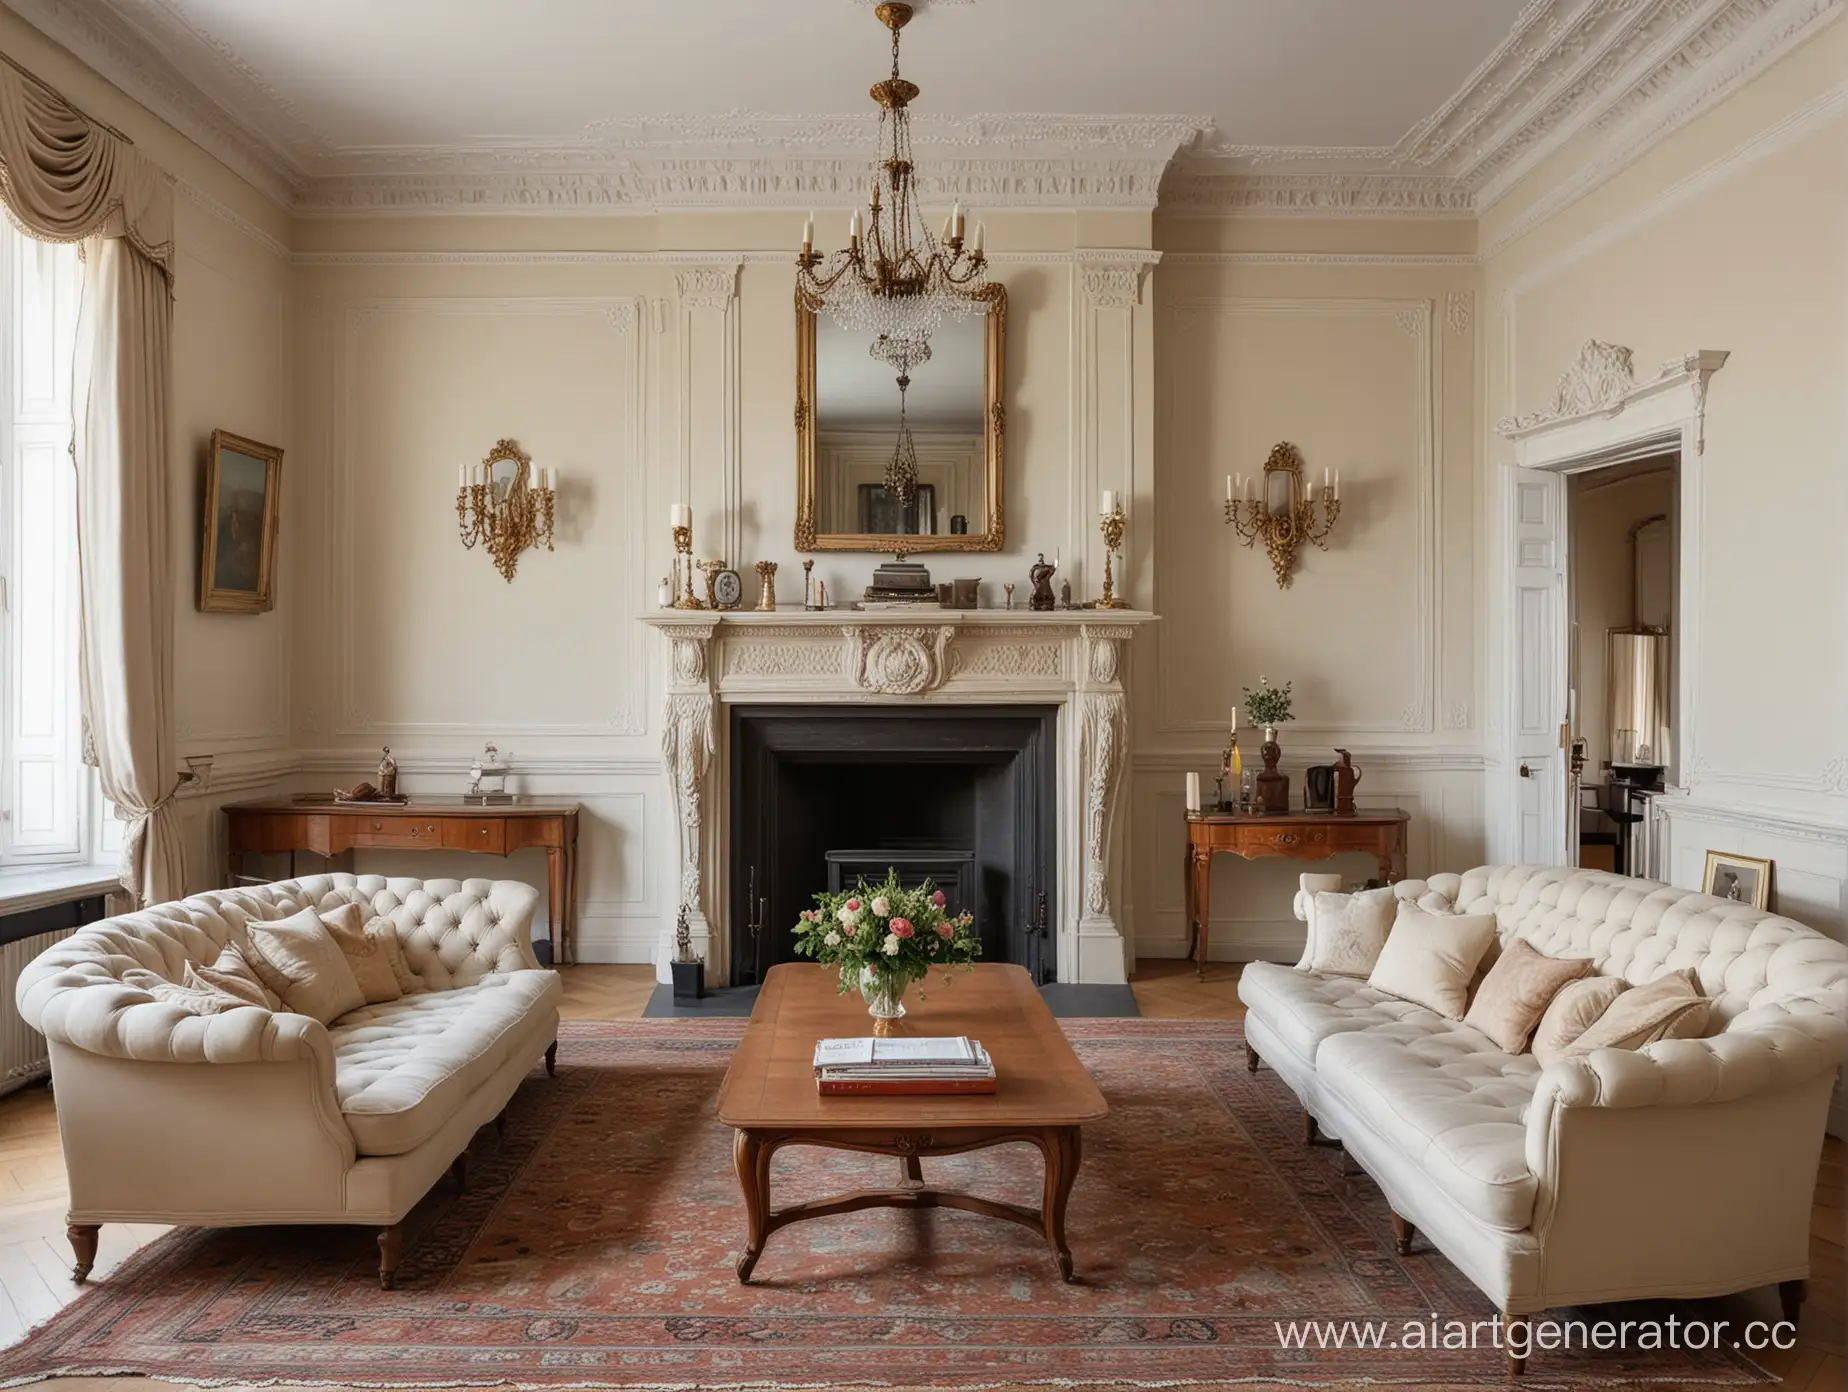 Аристократичная гостиная конца 19 века, камин, диван обитый тканью, журнальный столик, стены в деревянной белой обналичке